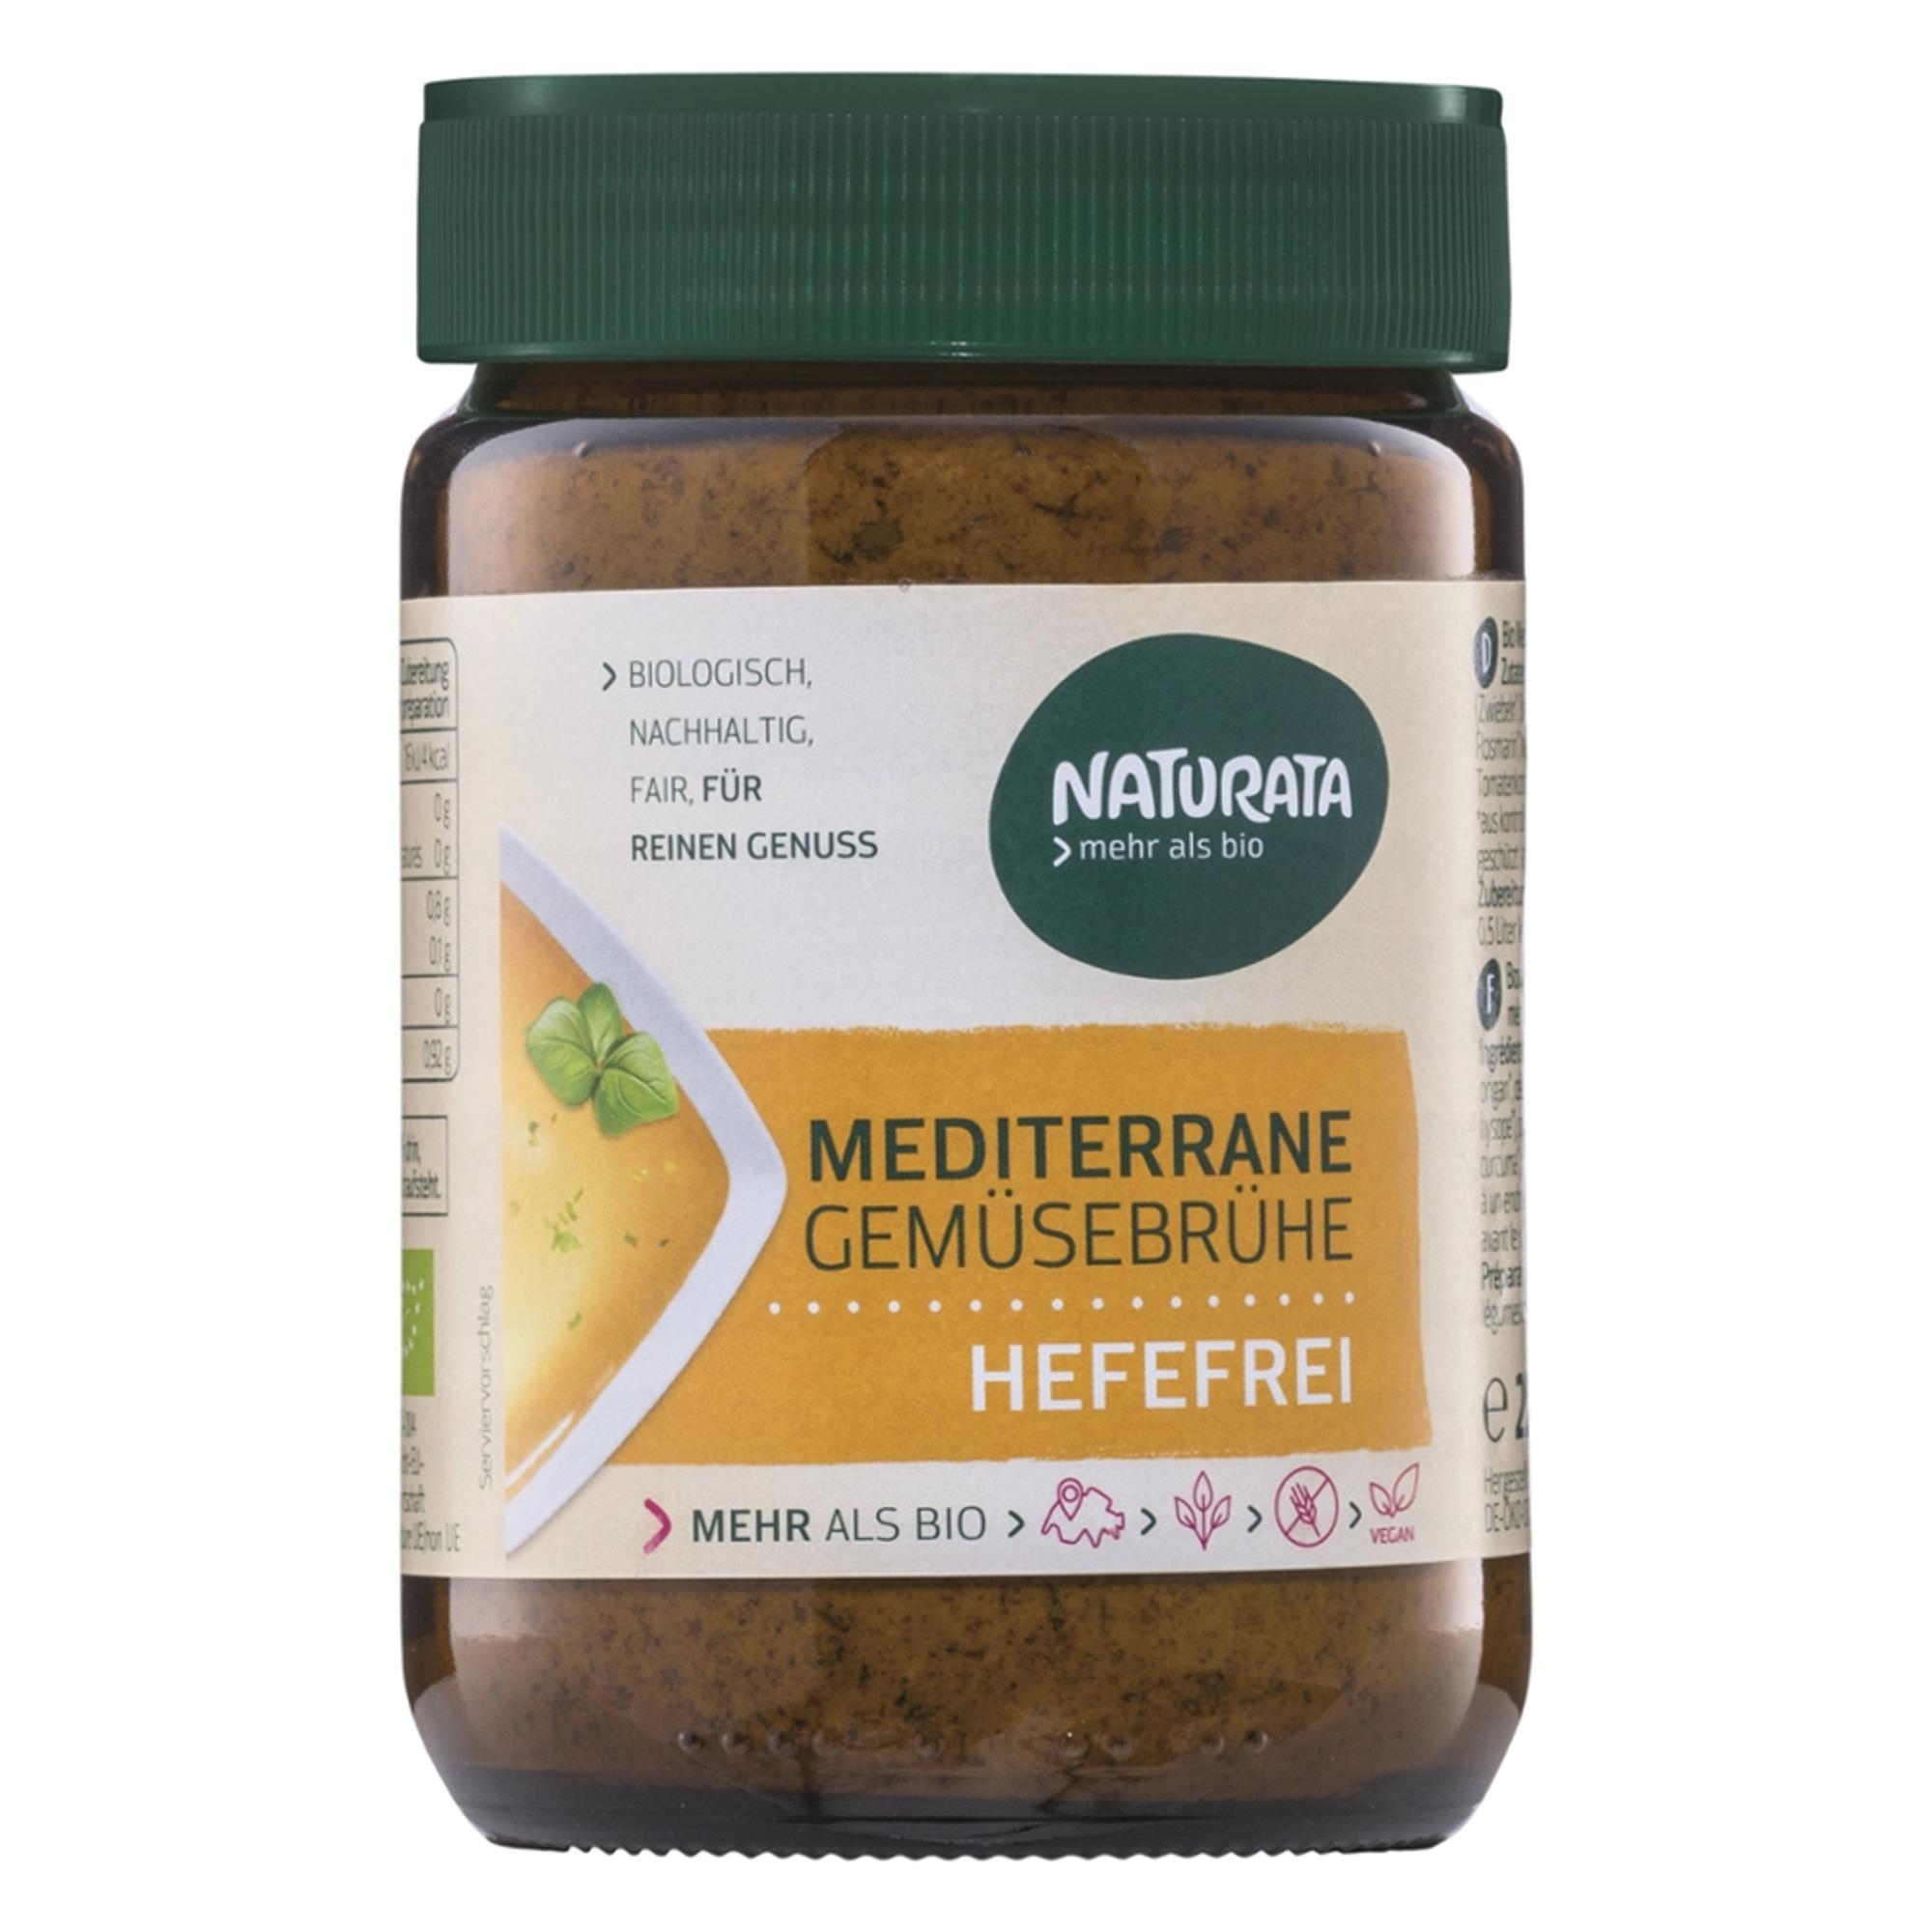 Mediterrane Gemüsebrühe hefefrei, glutenfrei, vegan von Naturata.